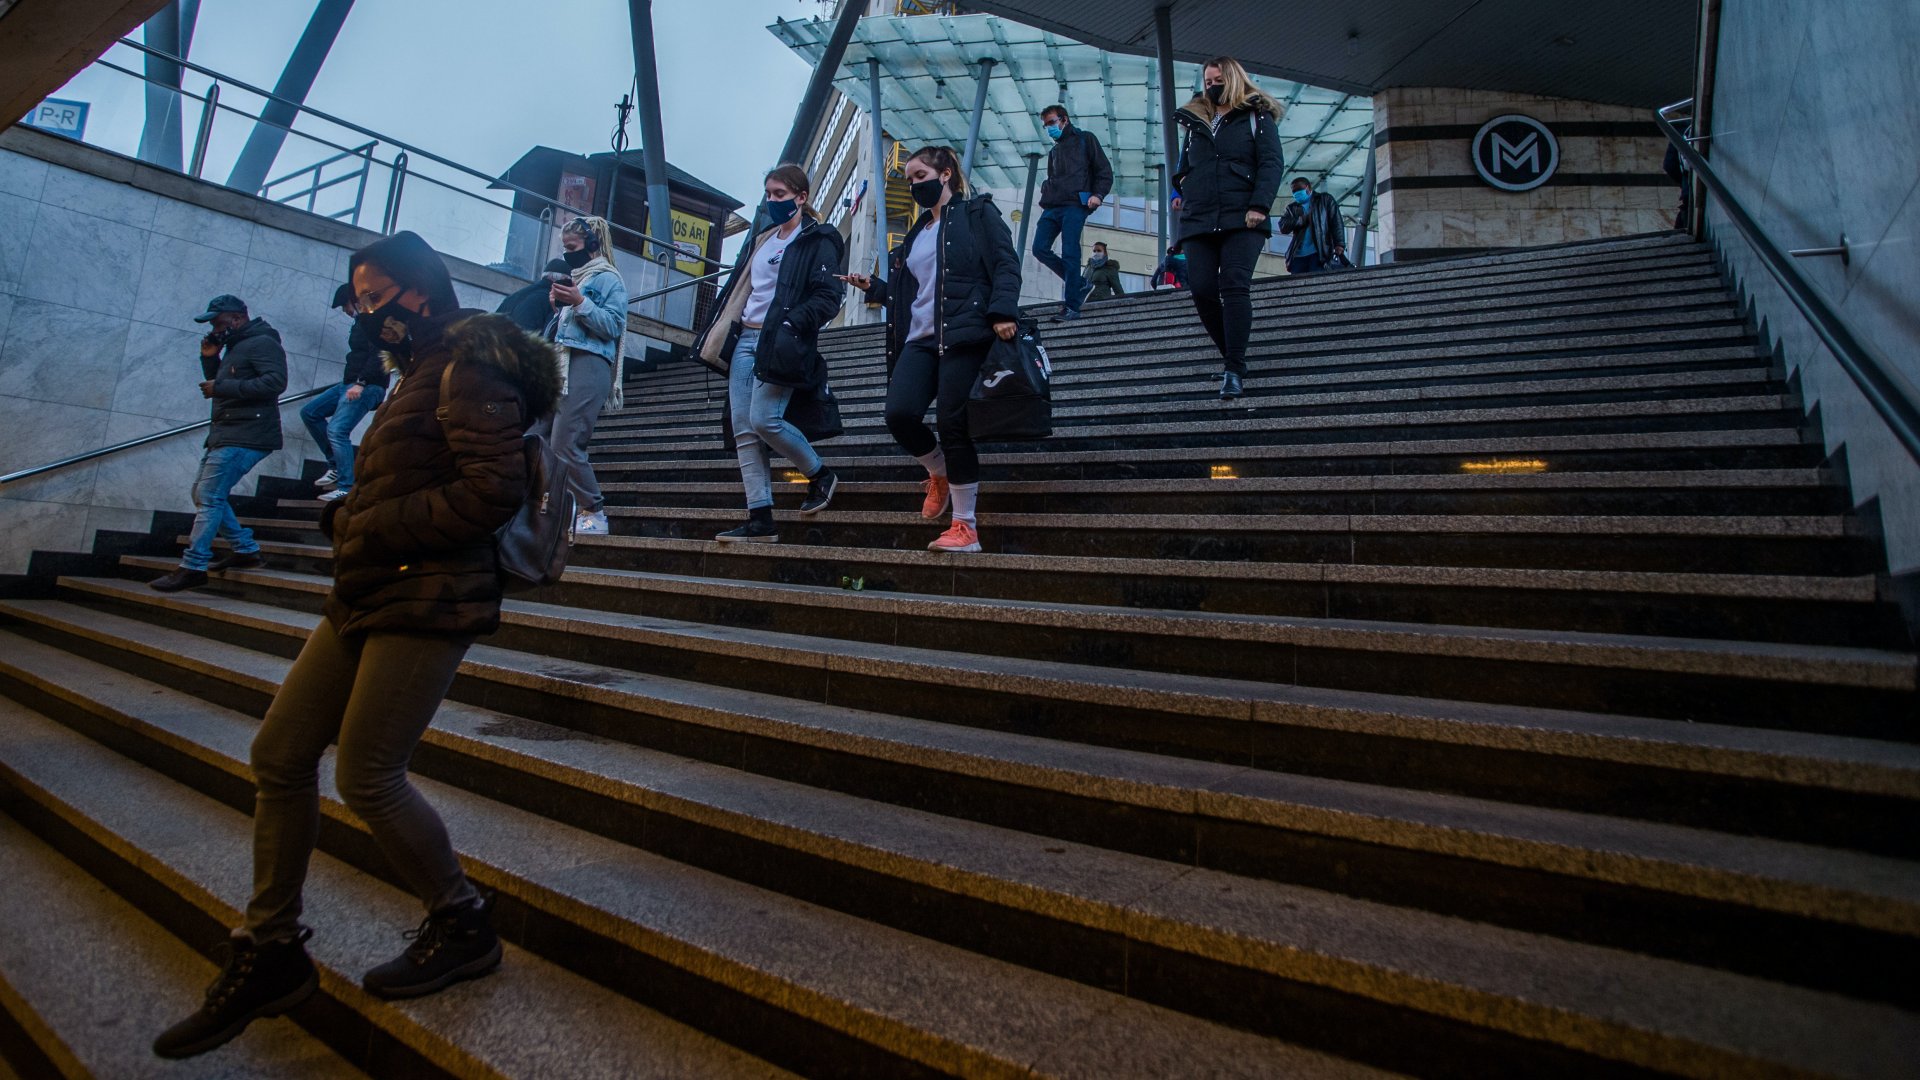 Járókelők a metró lépcsőjén